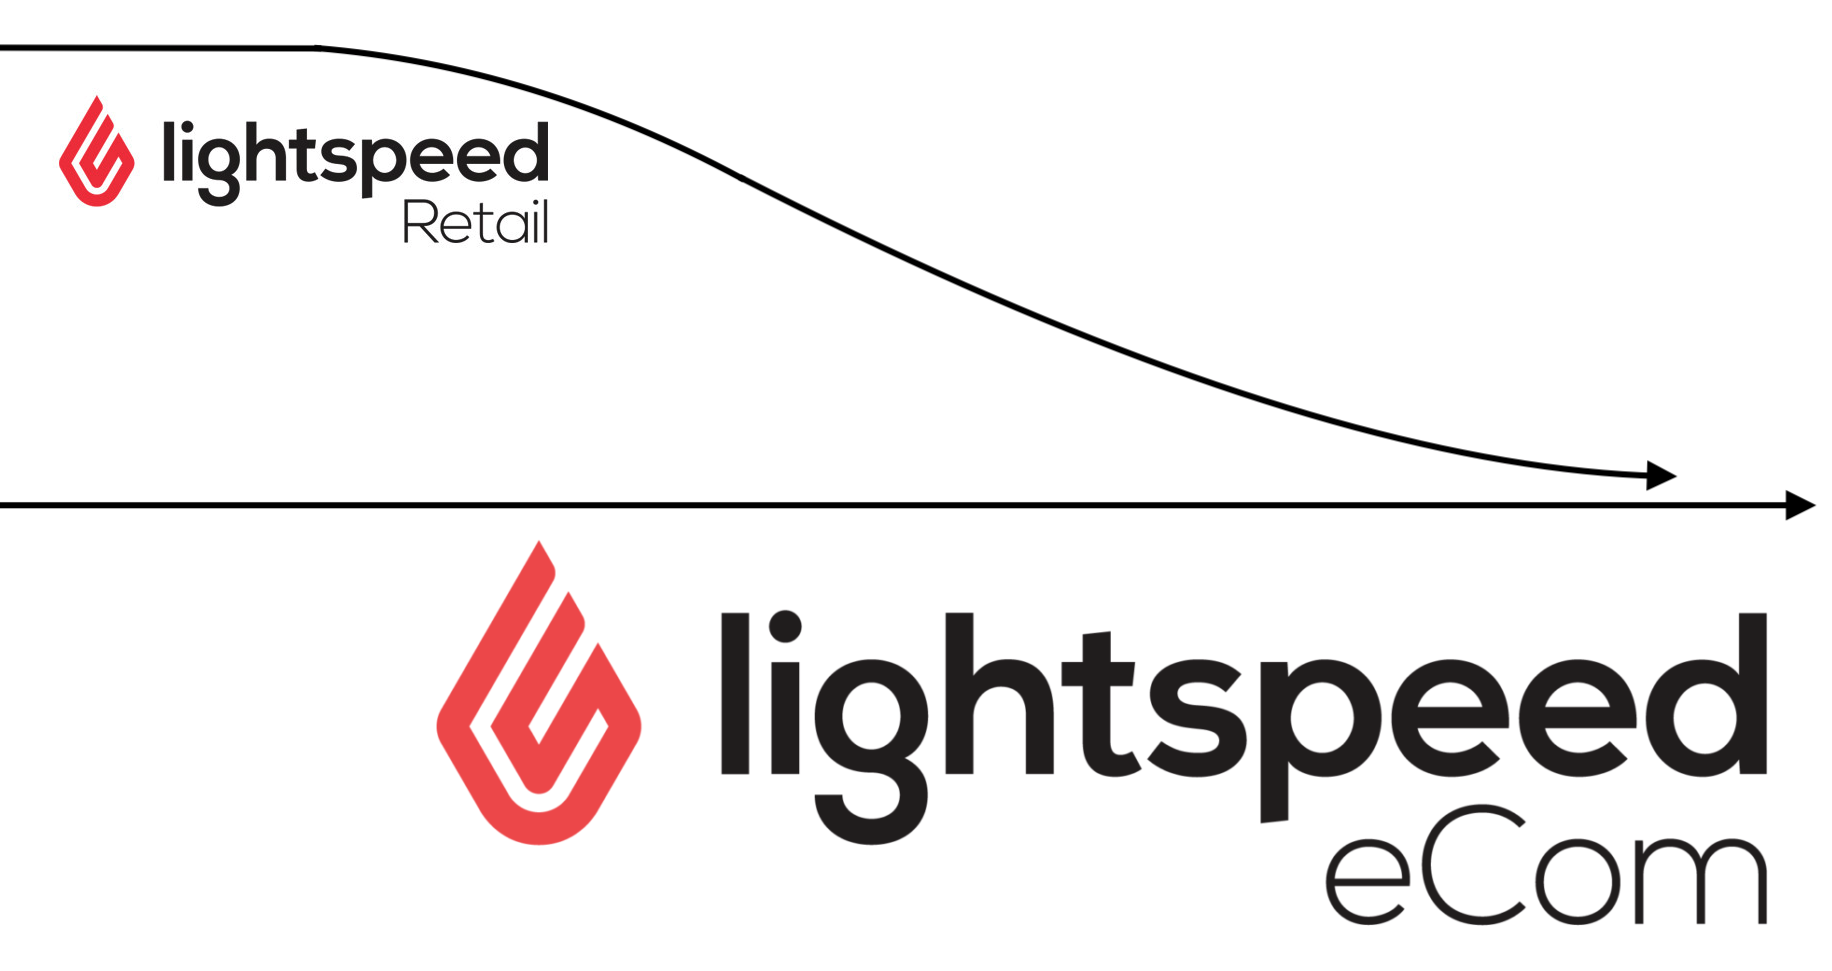 Affiche les logos Lightspeed Retail et eCom dont chacun dispose d’une flèche. La flèche Retail fusionne avec la flèche eCom.